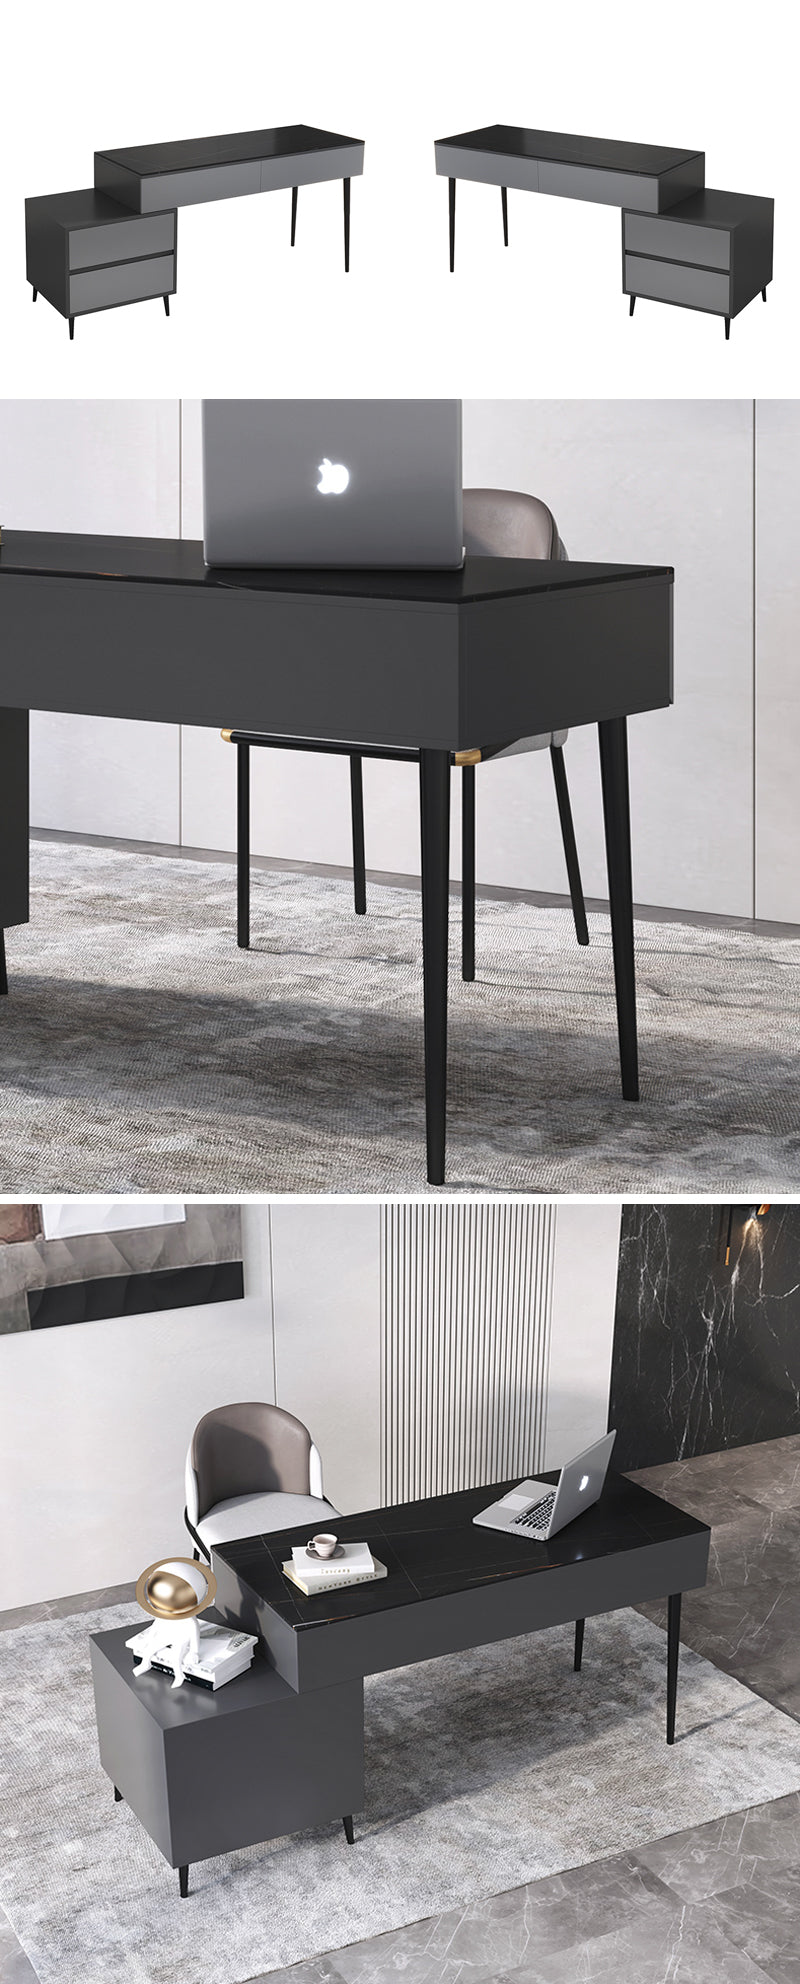 【デスク】テーブル 高級感 選べる2色 テーブル+収納ボックス+チェア 天板色ブラック